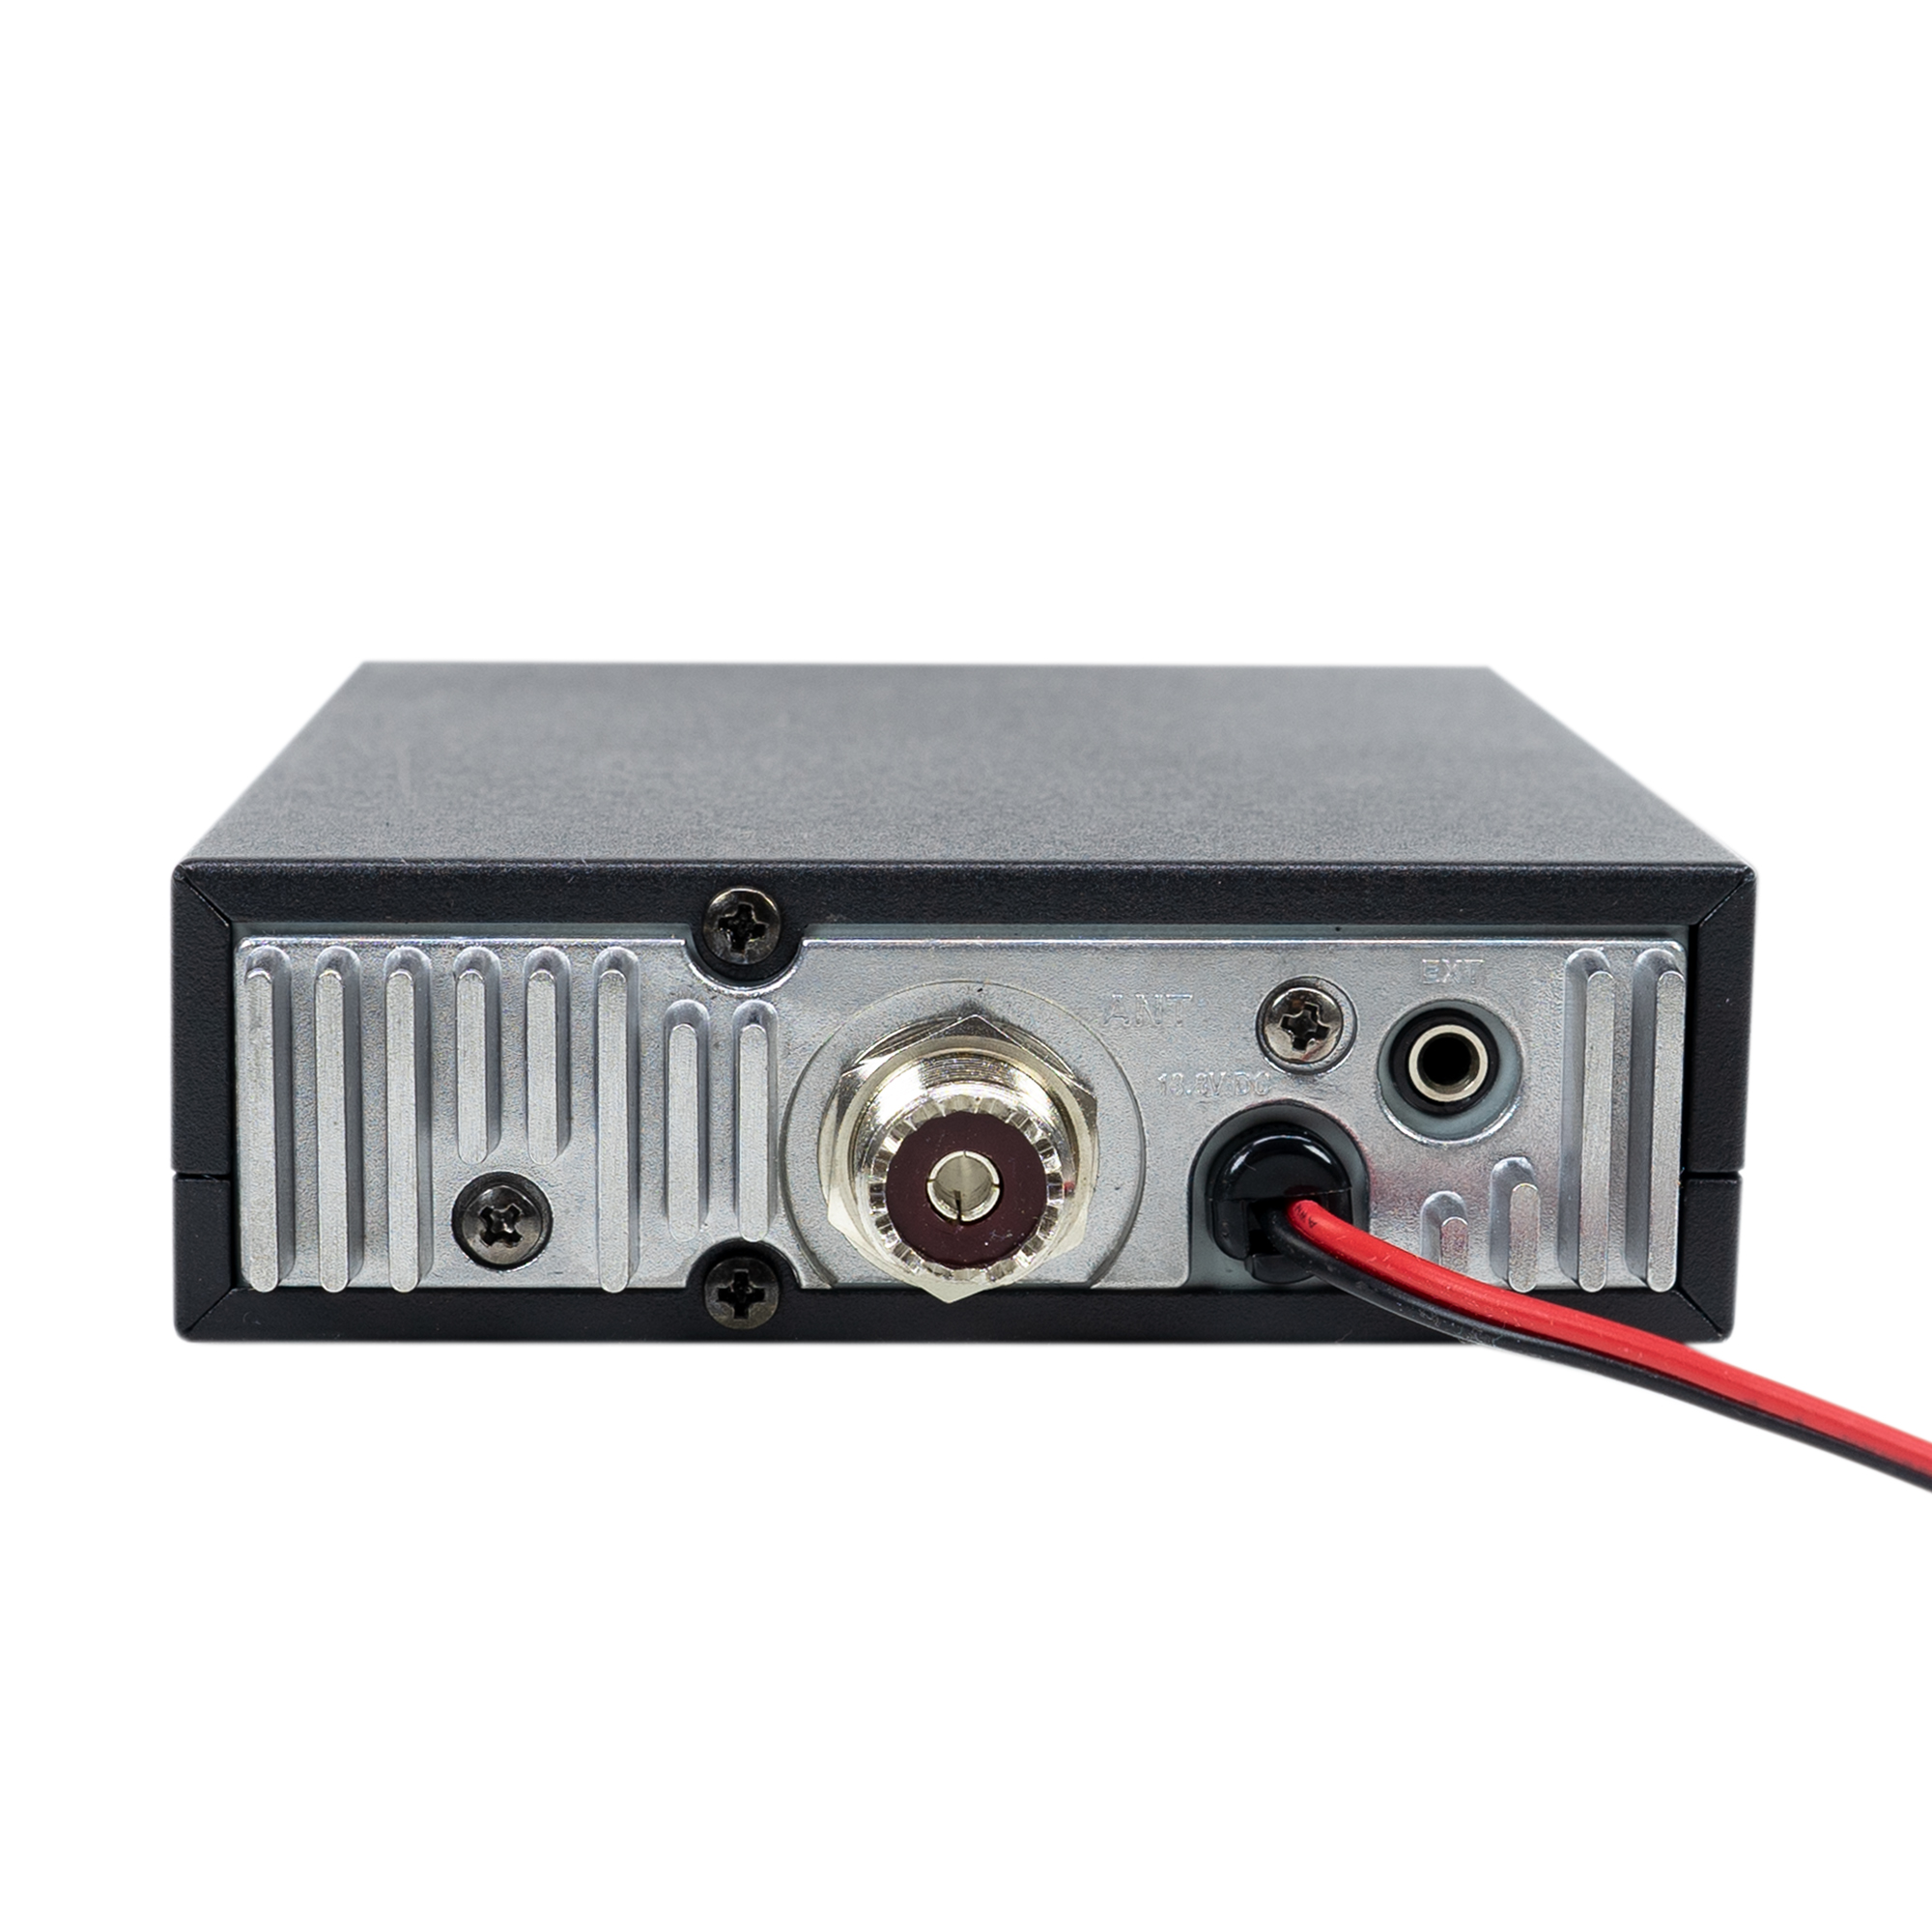 CB-Radiosender HP 9700 mit ANC-Funktion und 5V 1,7A  - Bild 2